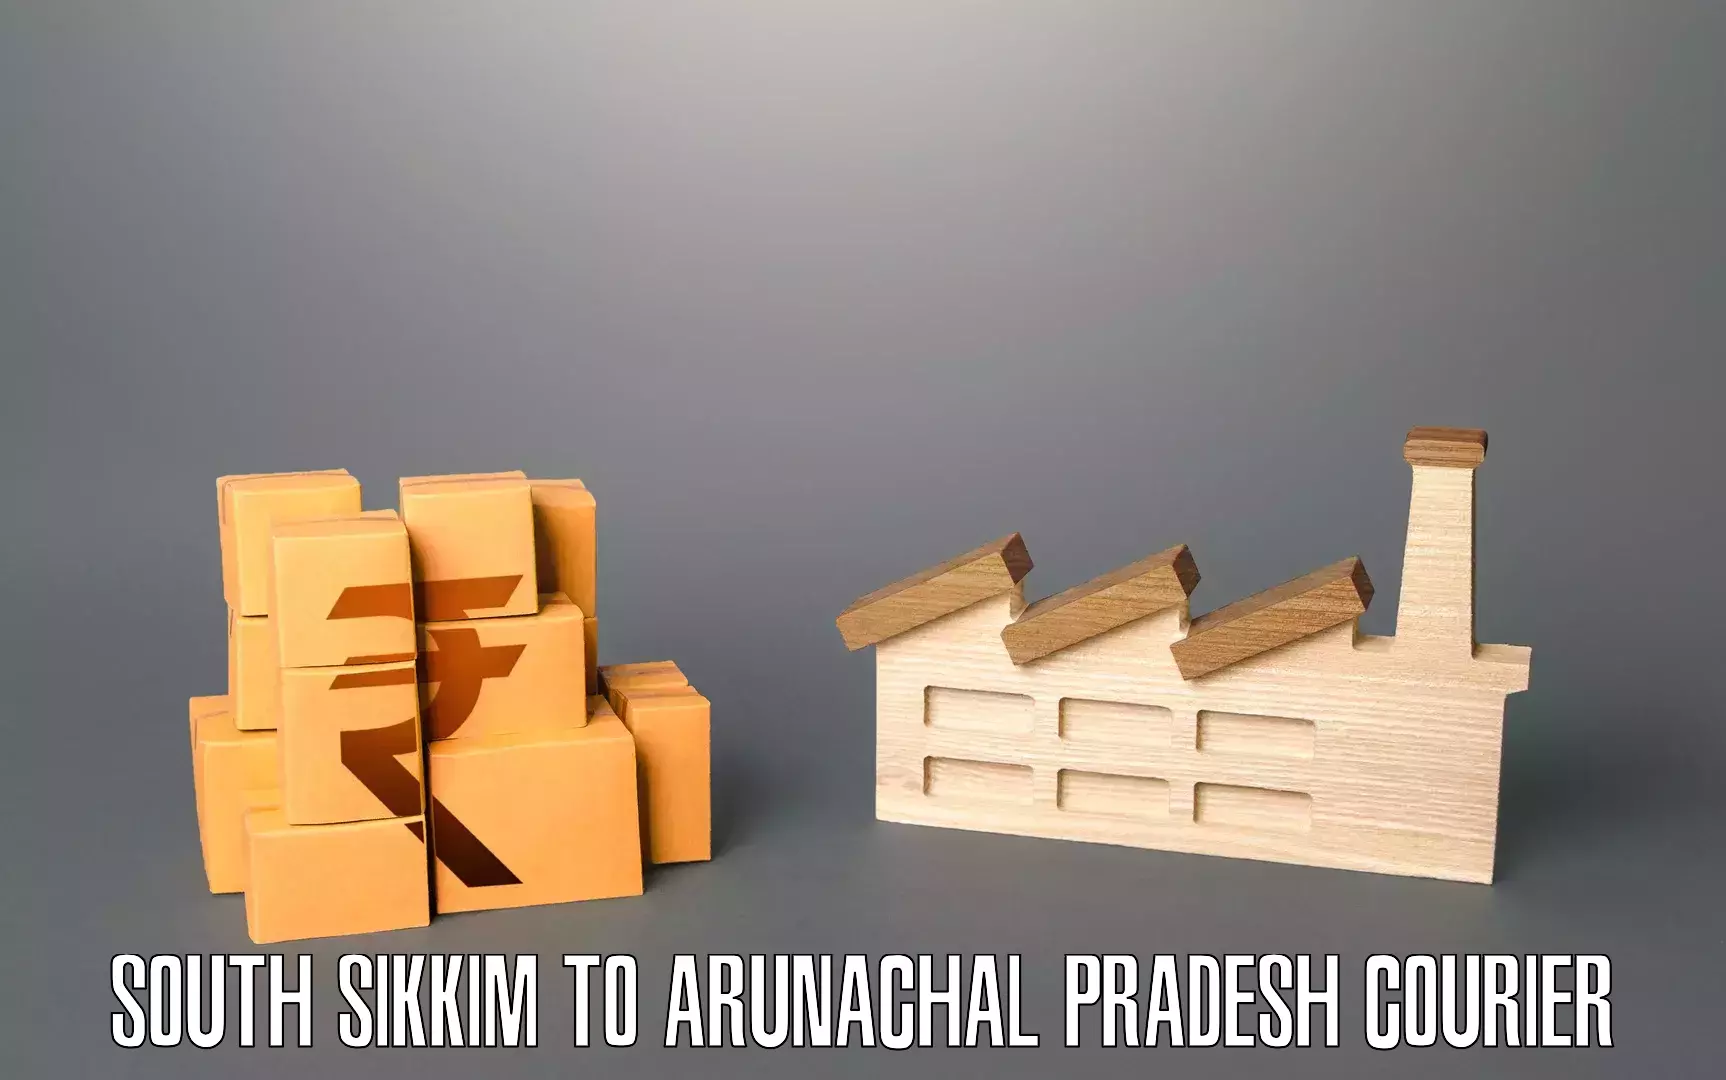 Efficient furniture transport South Sikkim to Arunachal Pradesh